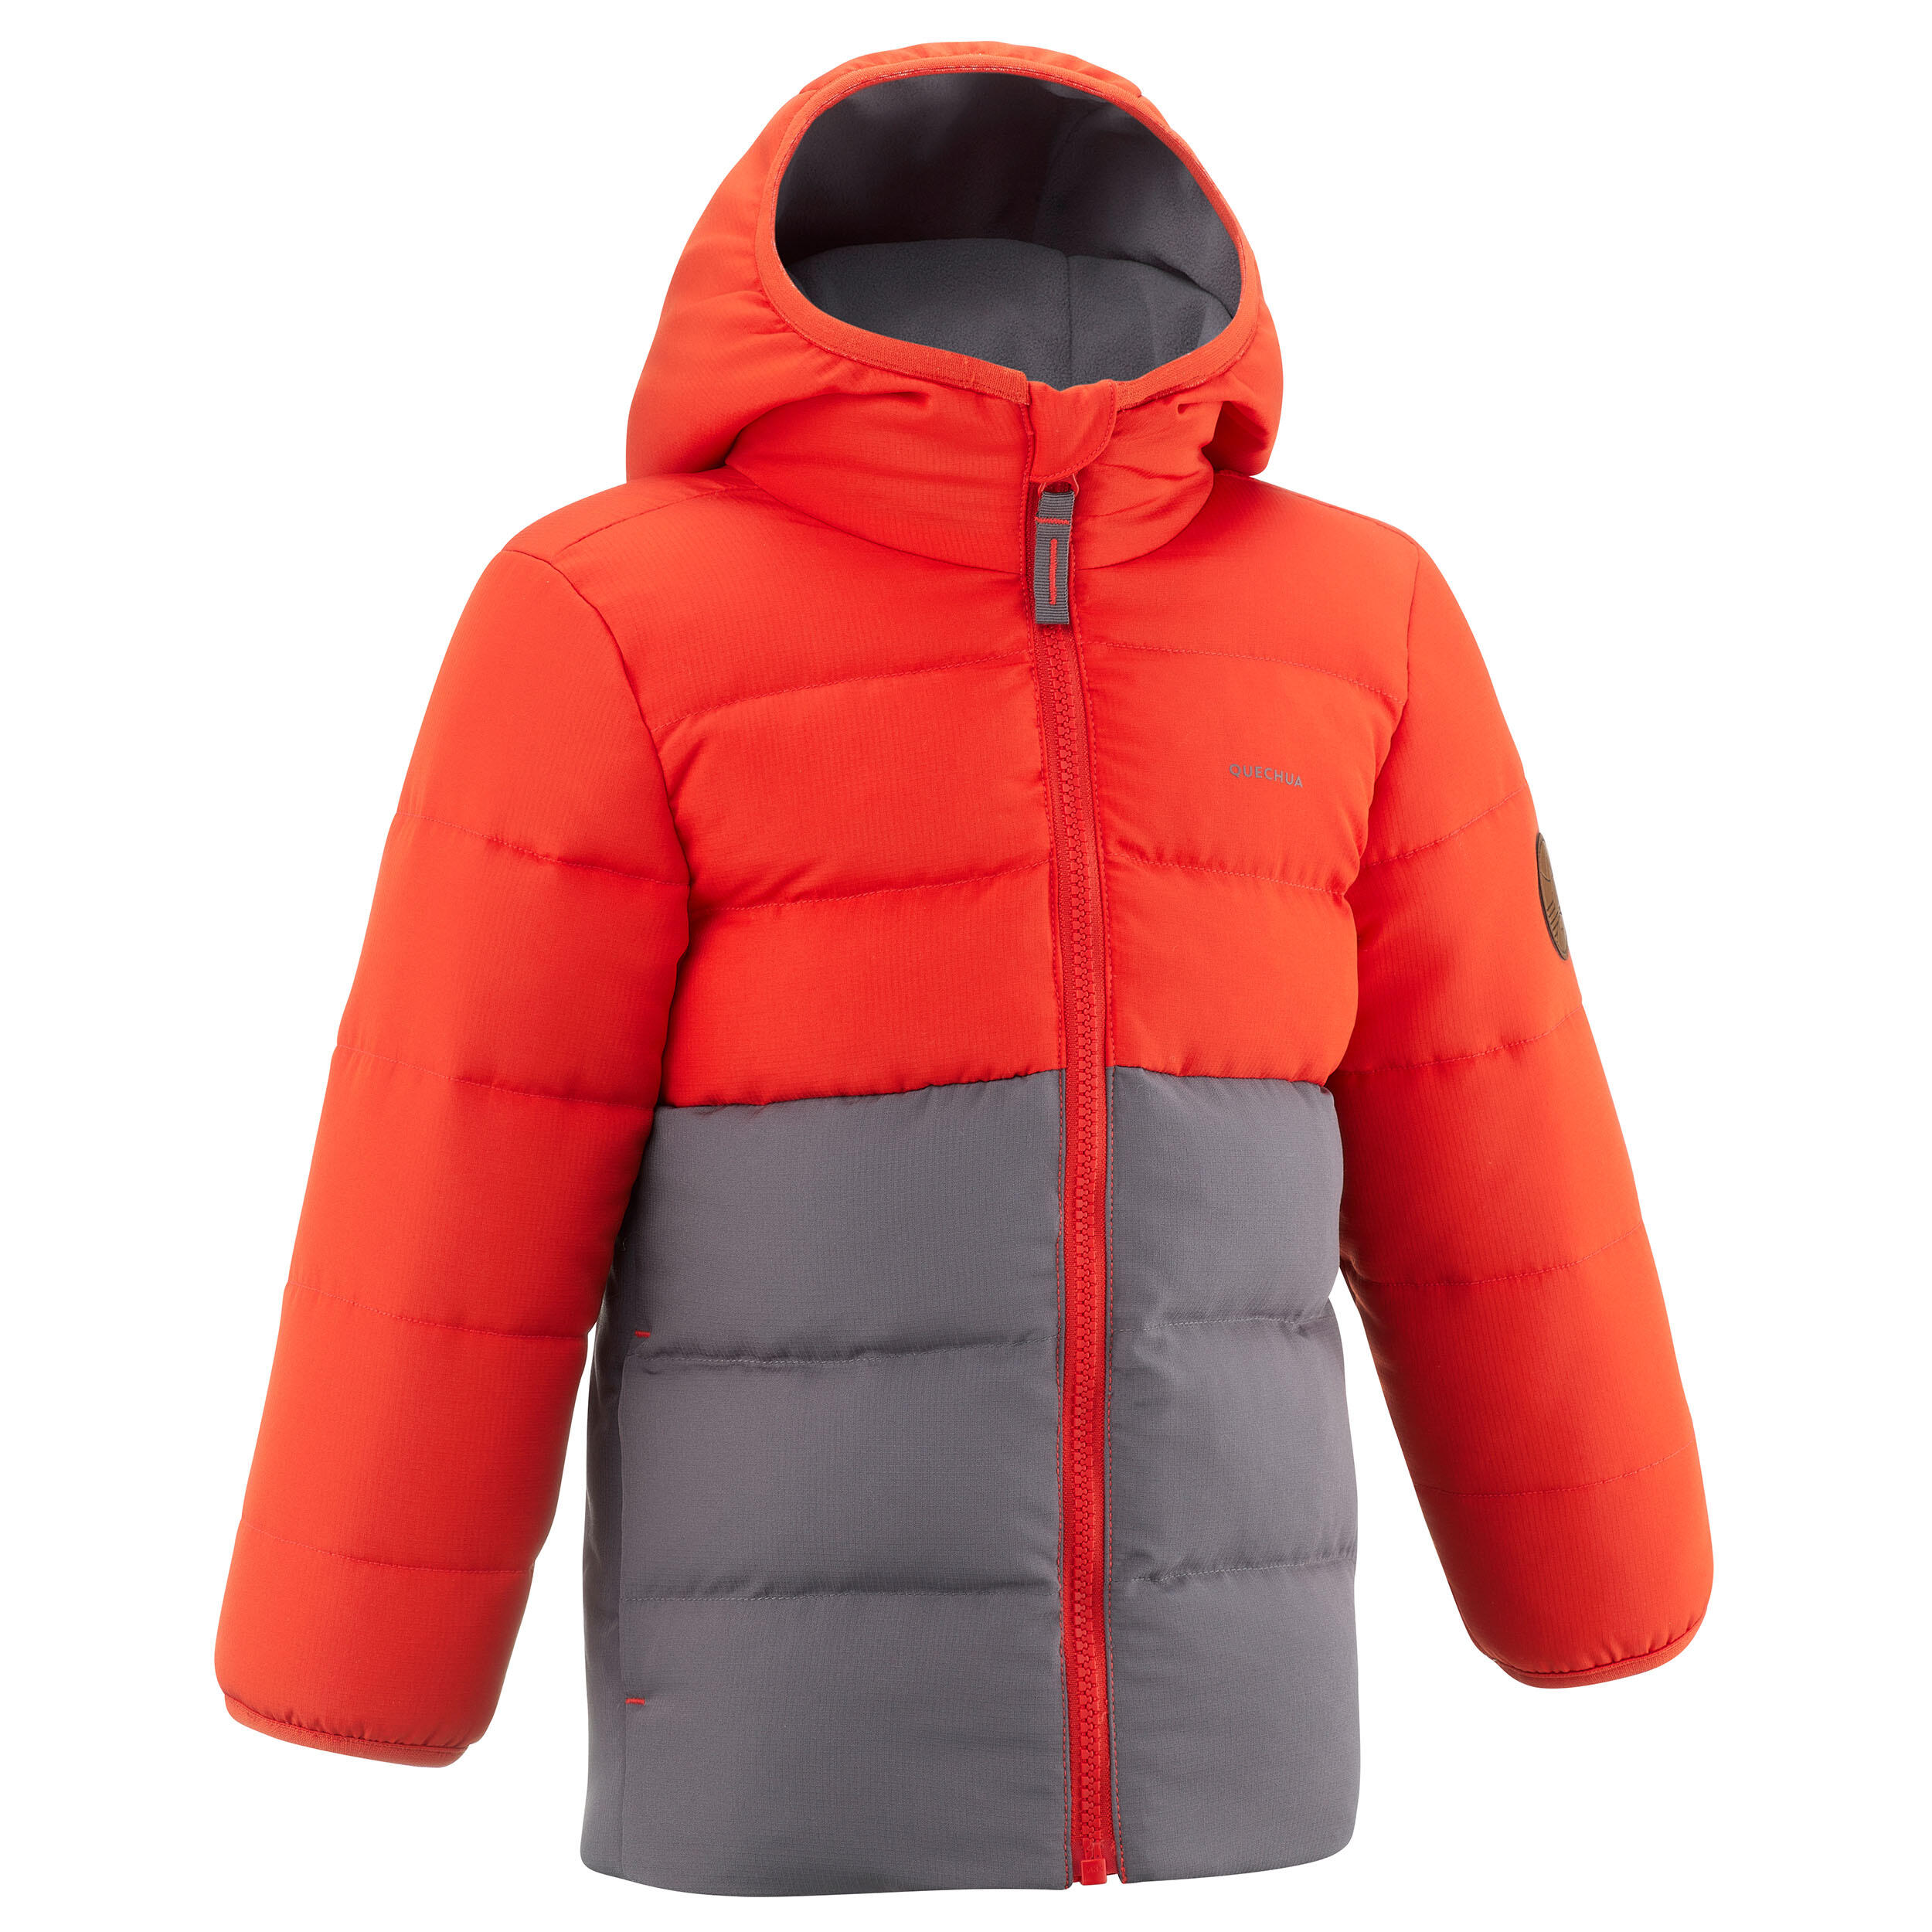 Kids’ Hiking Padded Jacket - Aged 2-6 - Orange and Grey 1/8